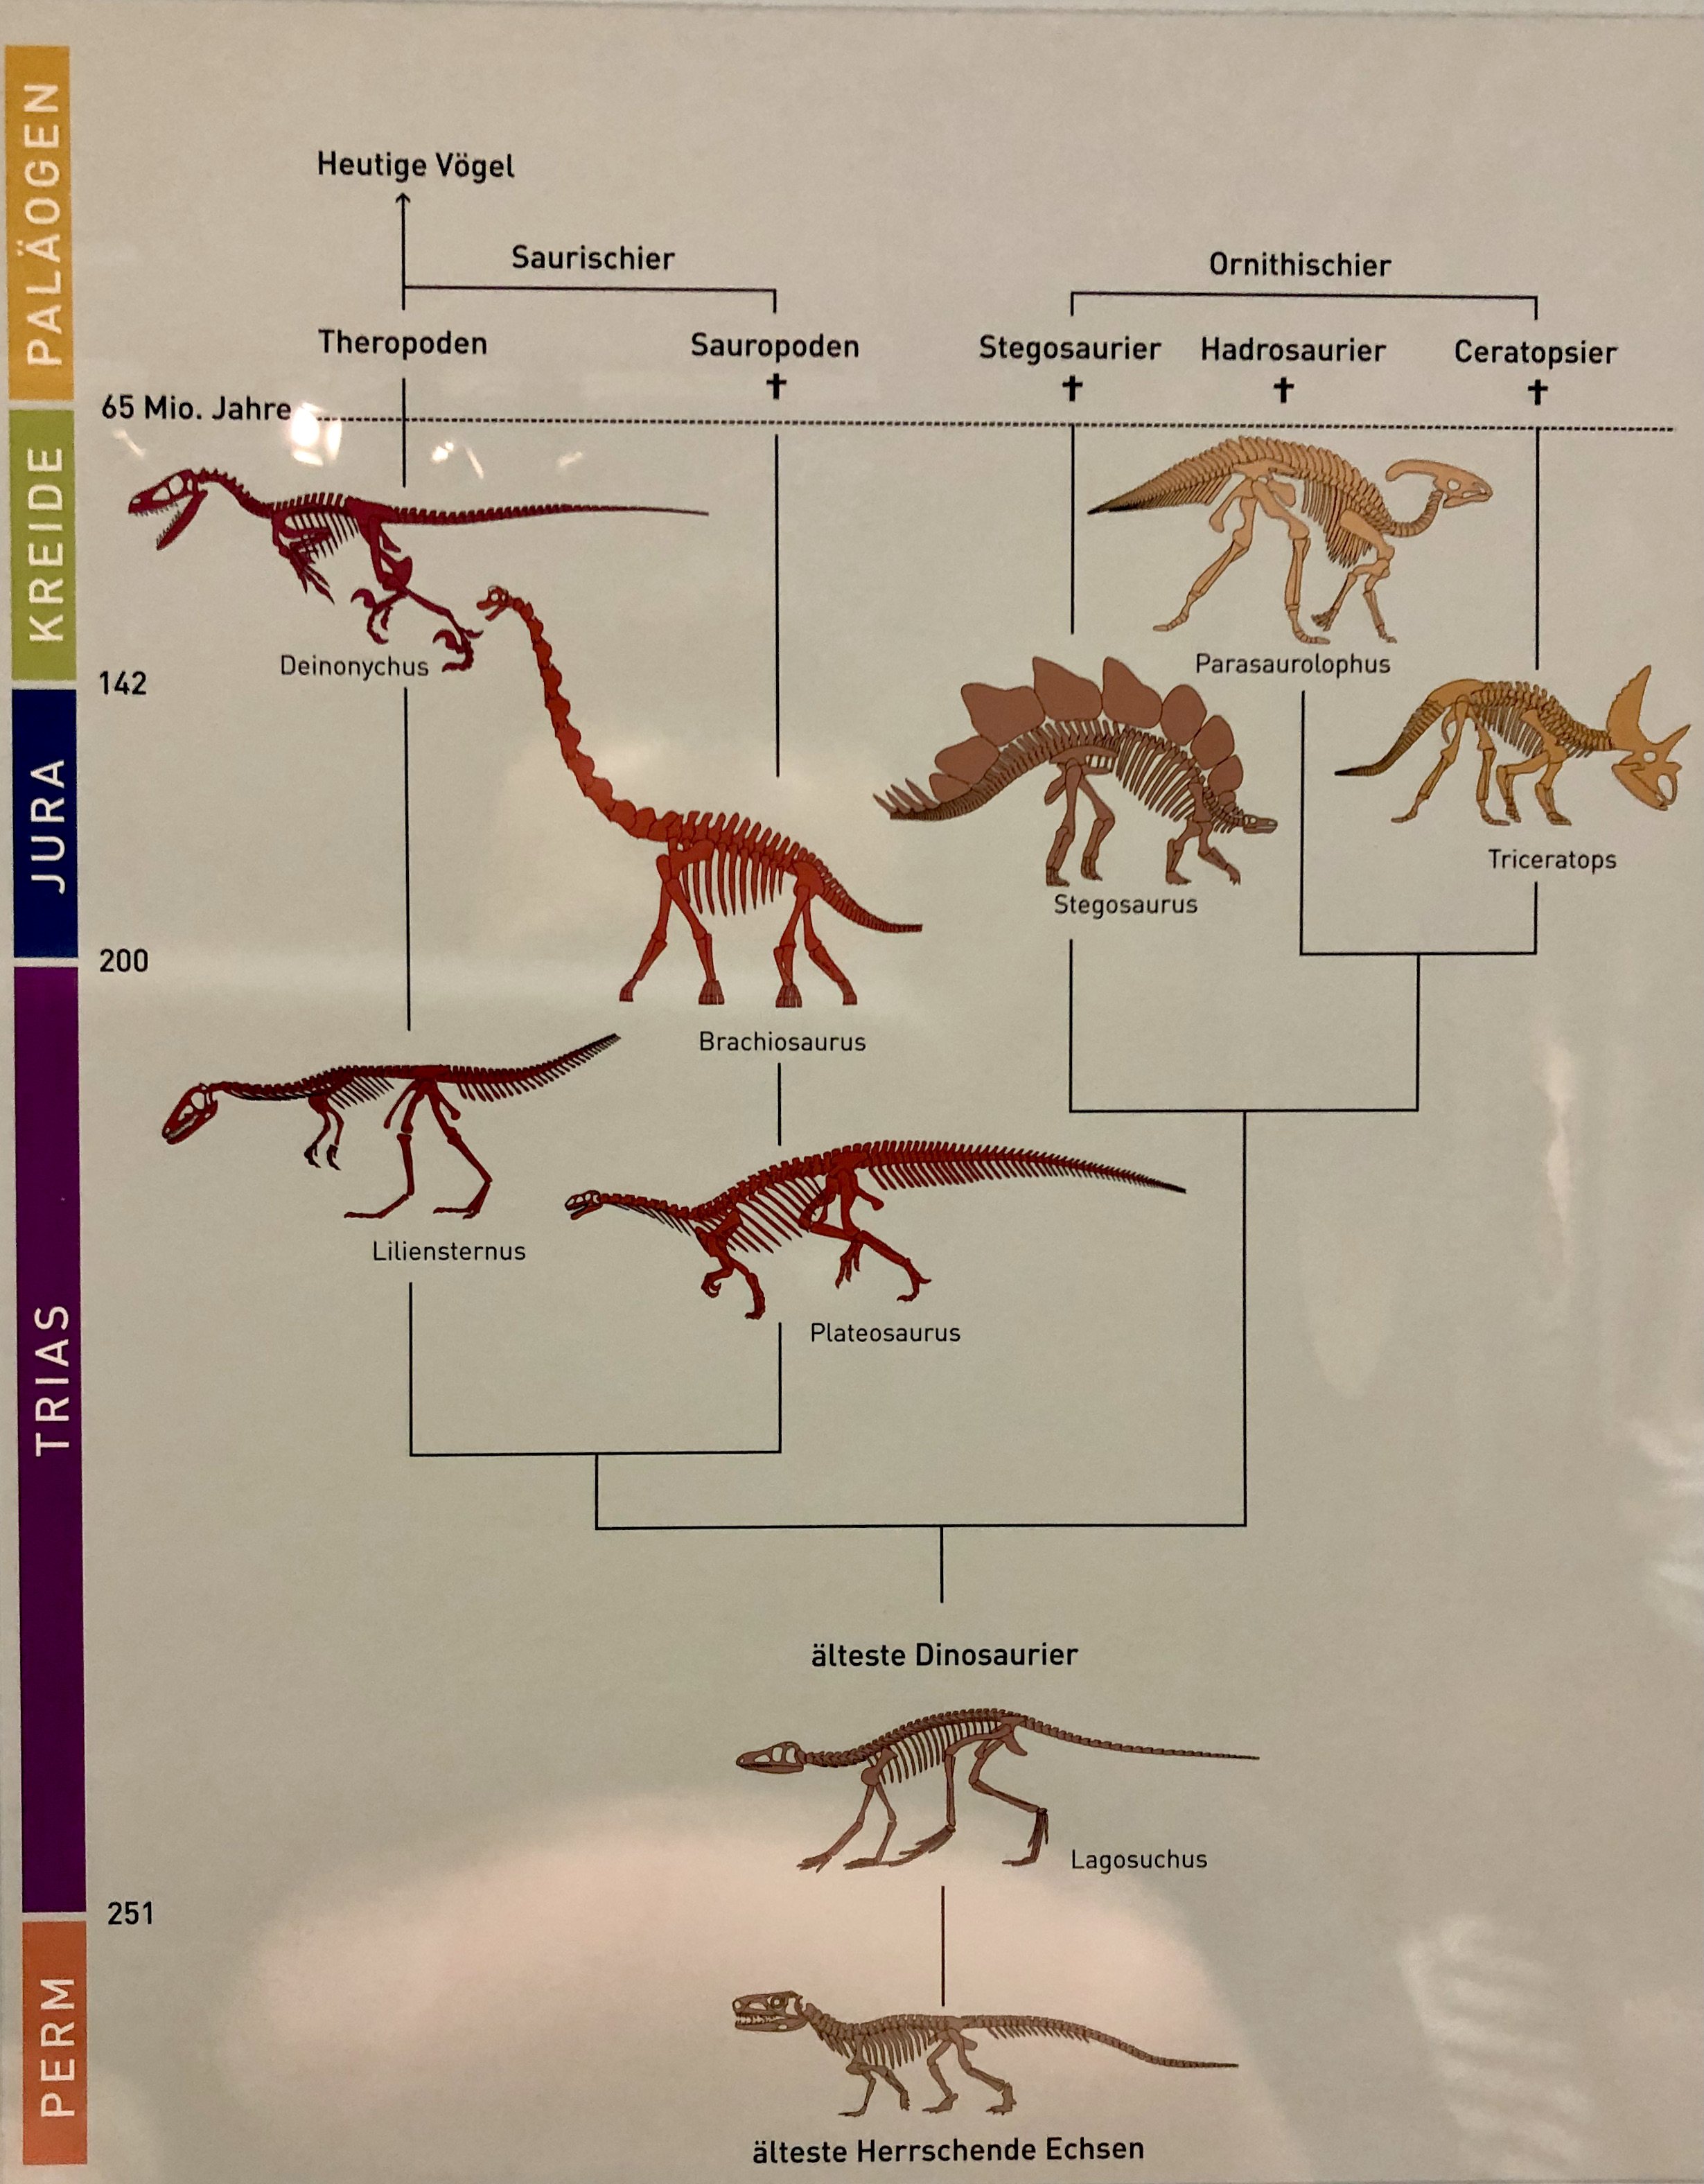 Dinosaur Evolution.jpeg